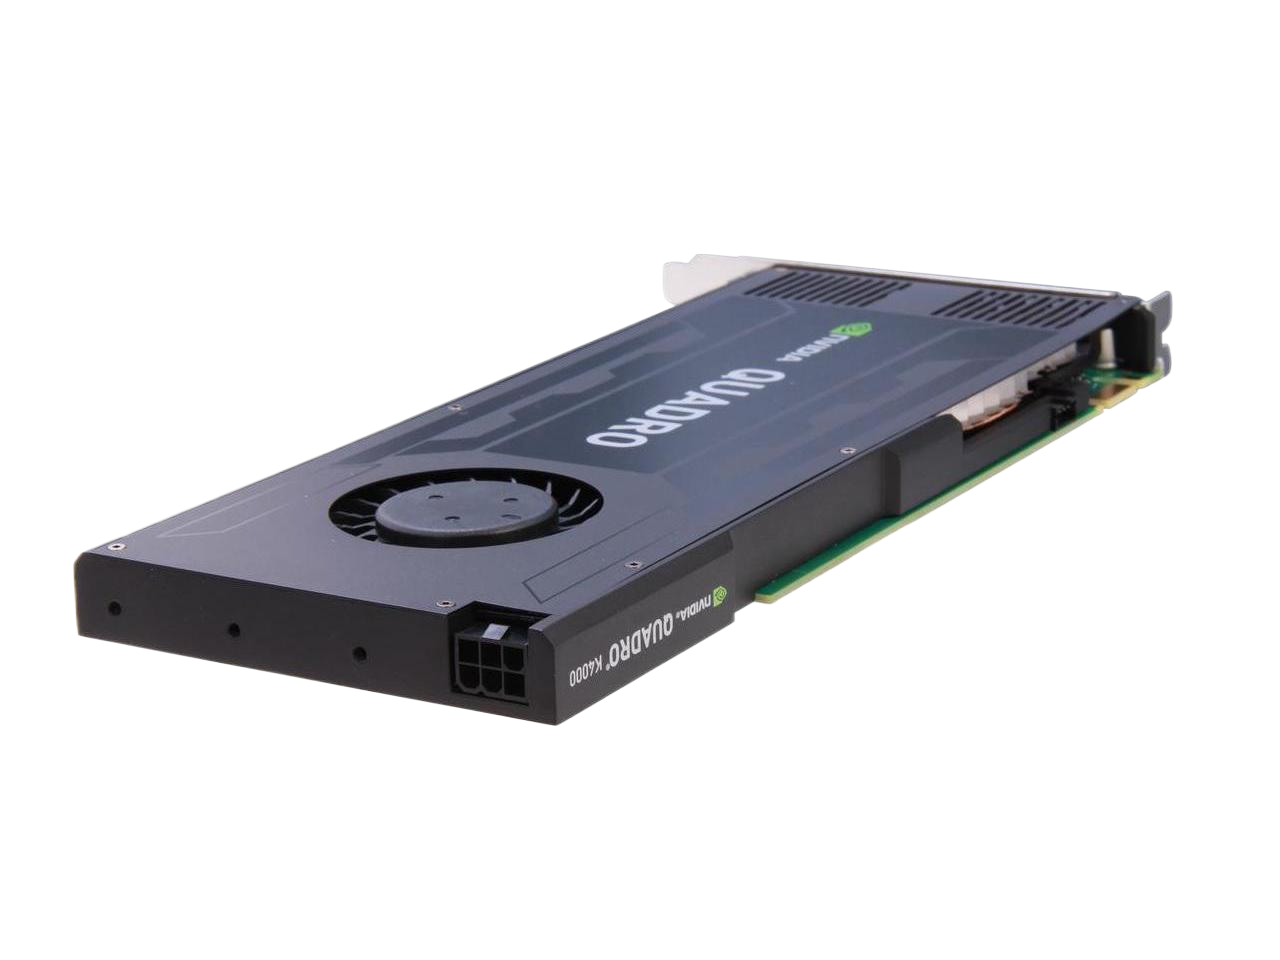 PNY NVIDIA Quadro K4000 3GB 192-bit GDDR5 PCI Express 2.0 x16 Full Height Workstation Video Card VCQK4000-PB